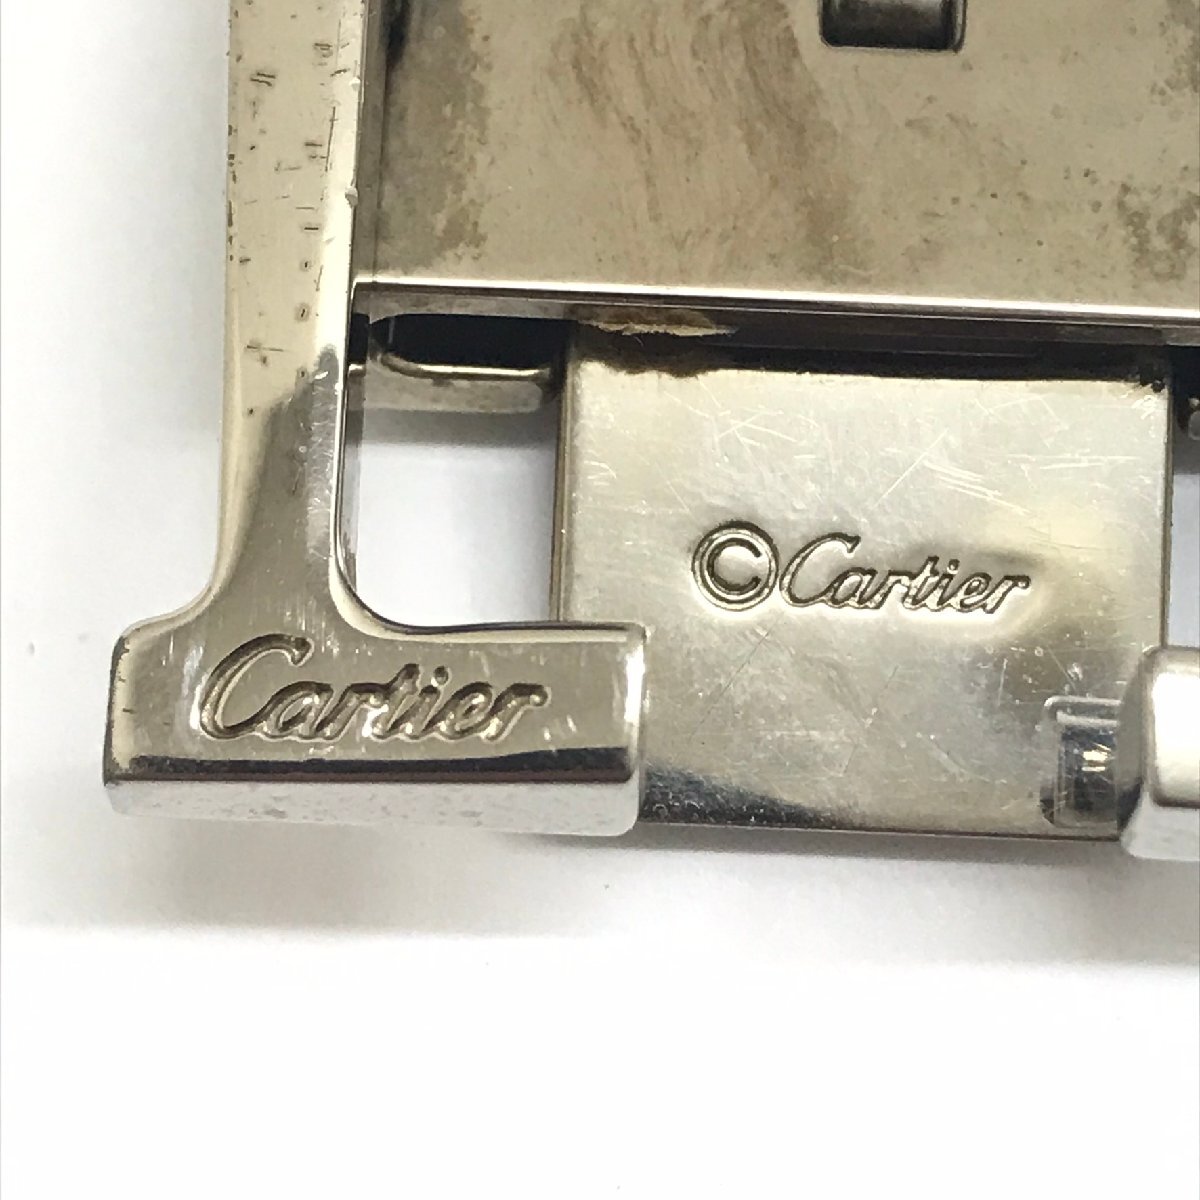  б/у товар Cartier Cartier ремень пряжка серебряный цвет пряжка только ломбард лот 